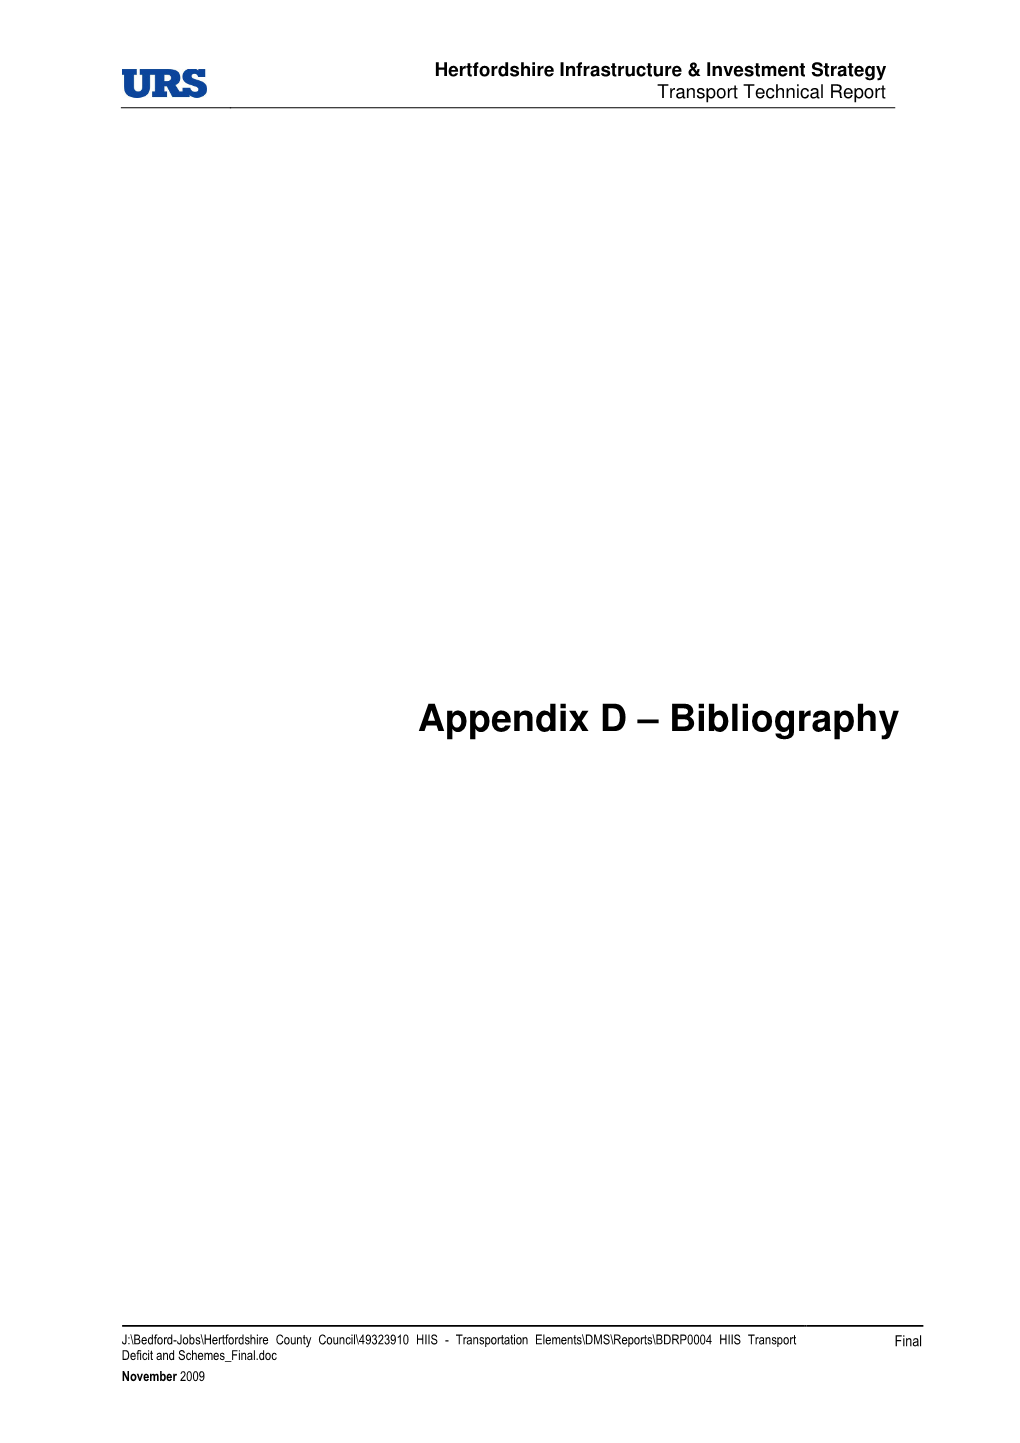 Appendix D – Bibliography